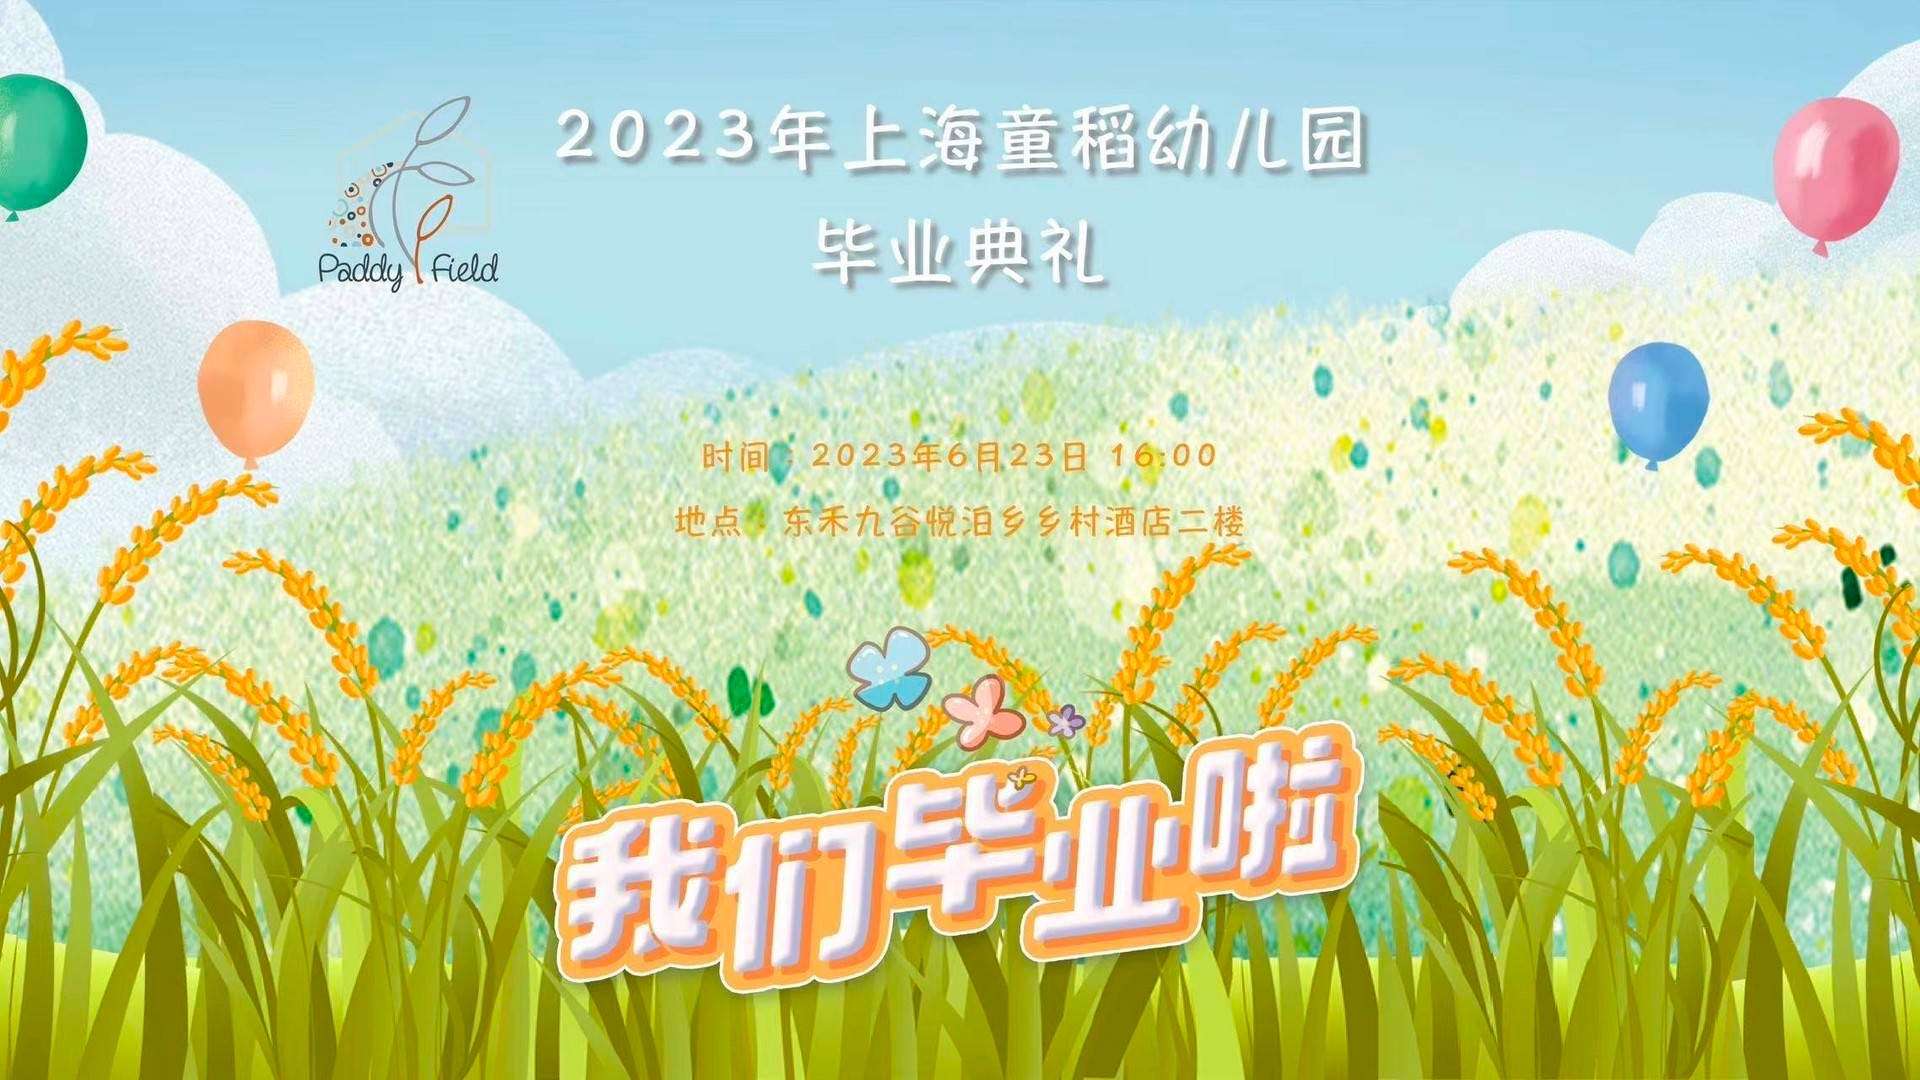 2023年上海童稻幼儿园毕业典礼 长版花絮